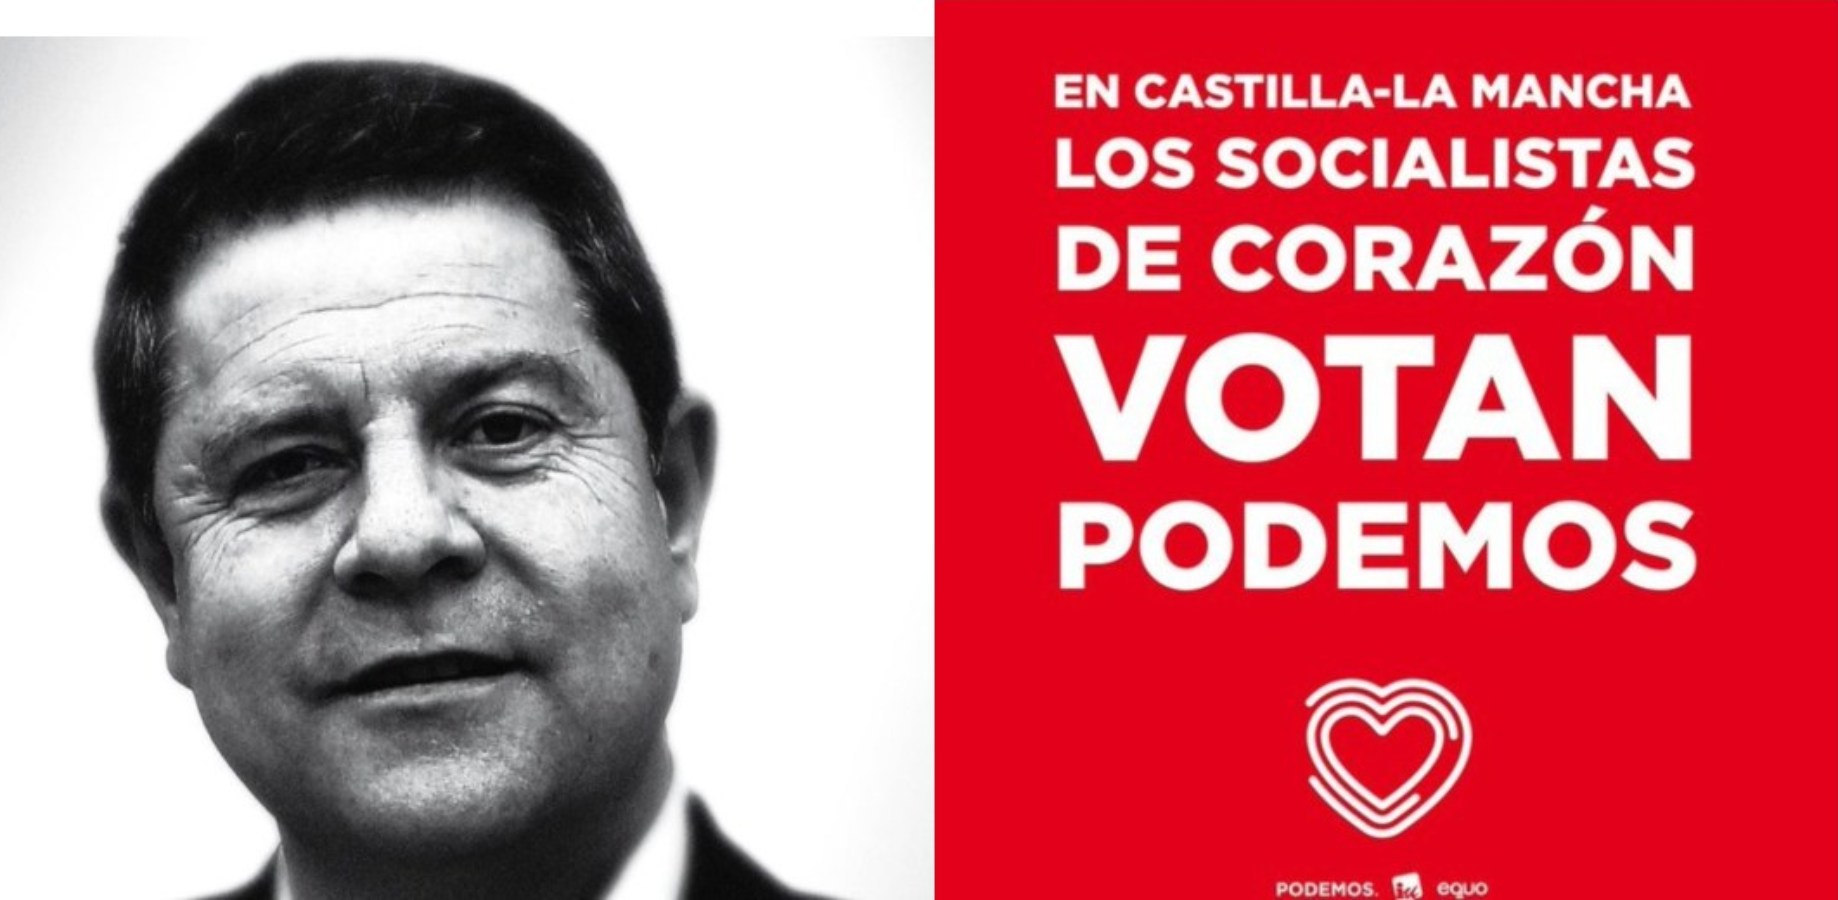 Imagen de la campaña de Podemos.